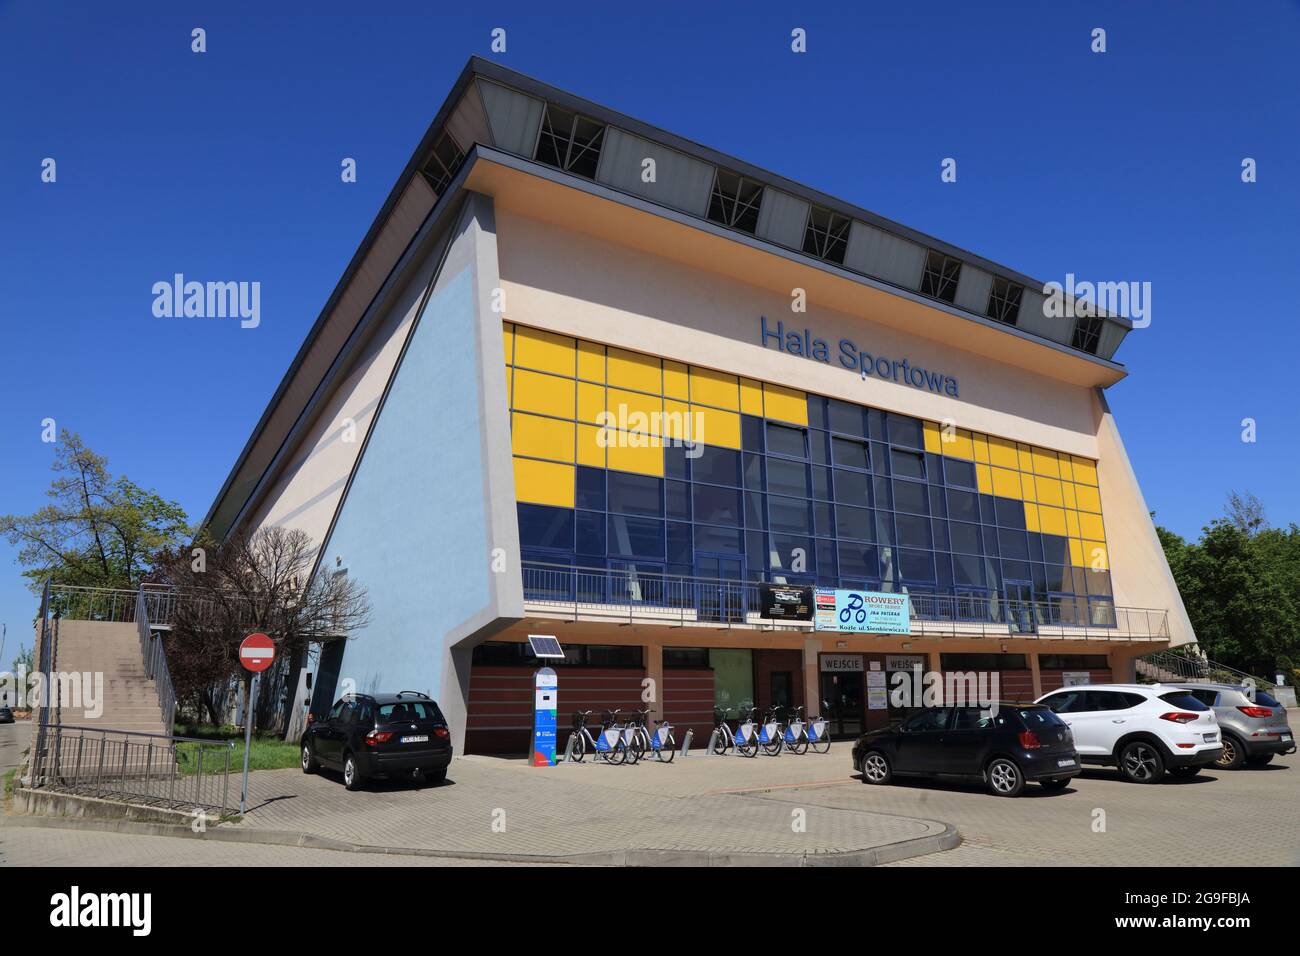 KEDZIERZYN-KOZLE, POLONIA - 11 MAGGIO 2021: Arena sportiva al coperto a Kedzierzyn-Kozle, Polonia. Kedzierzyn-Kozle è la seconda città più grande della provincia di Opole. Foto Stock